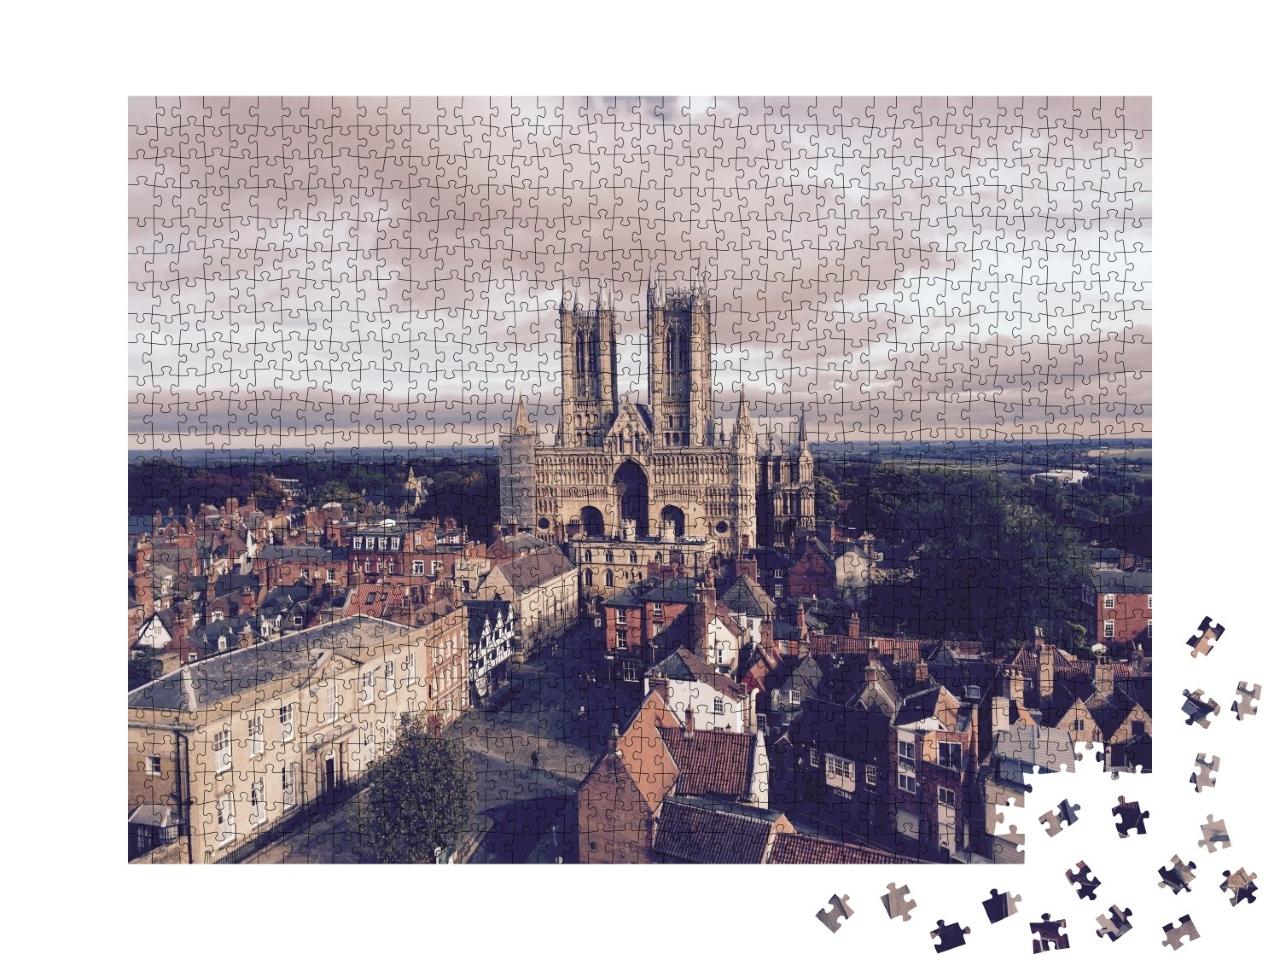 Puzzle de 1000 pièces « La cathédrale de Lincoln, Angleterre »